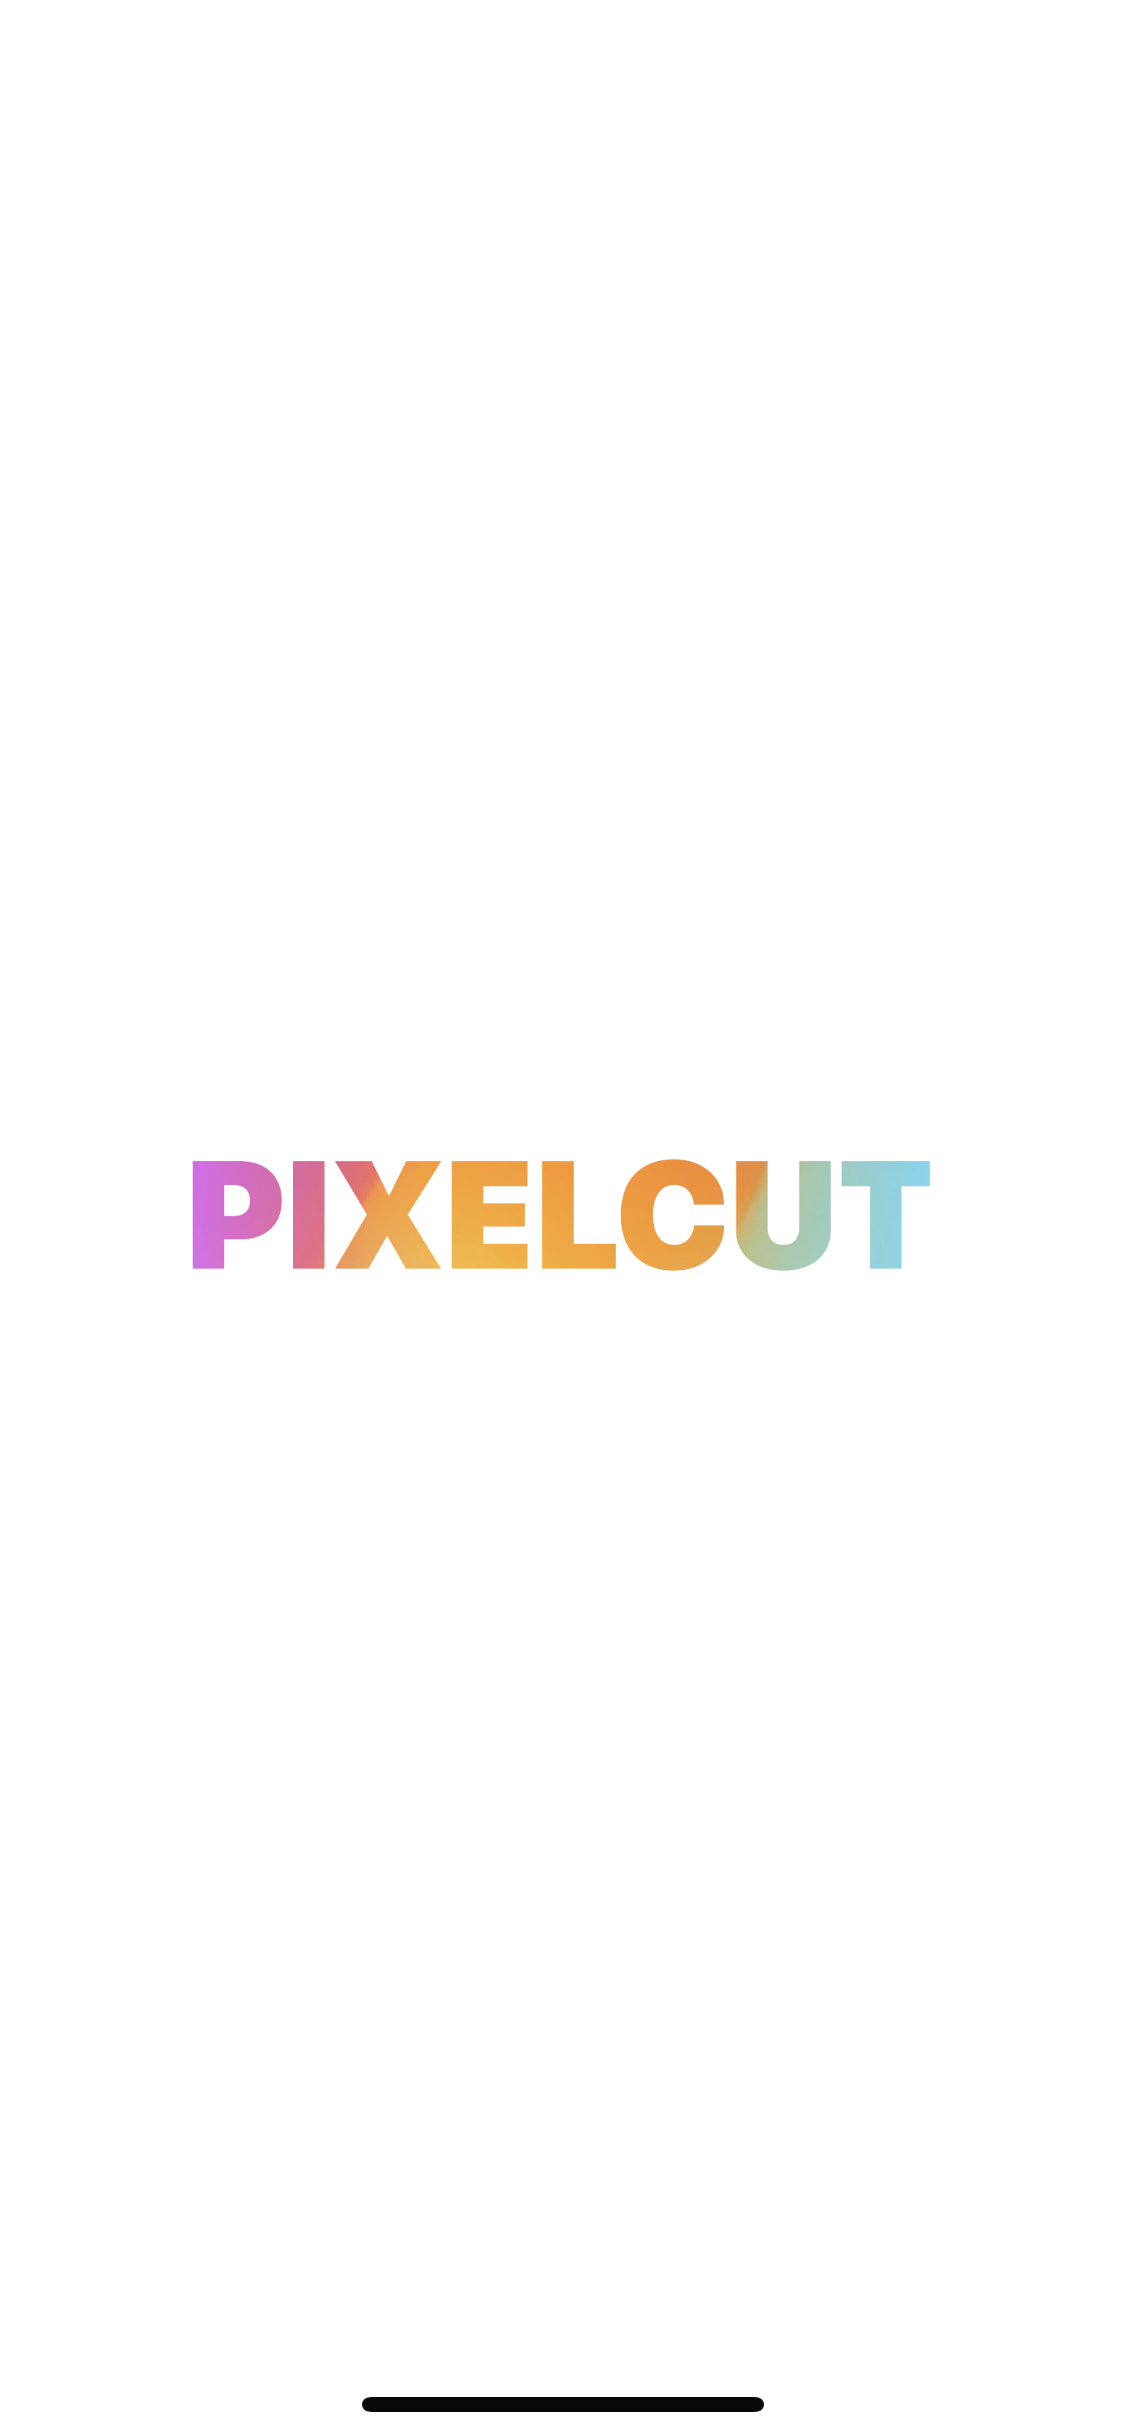 pixelcut home logo